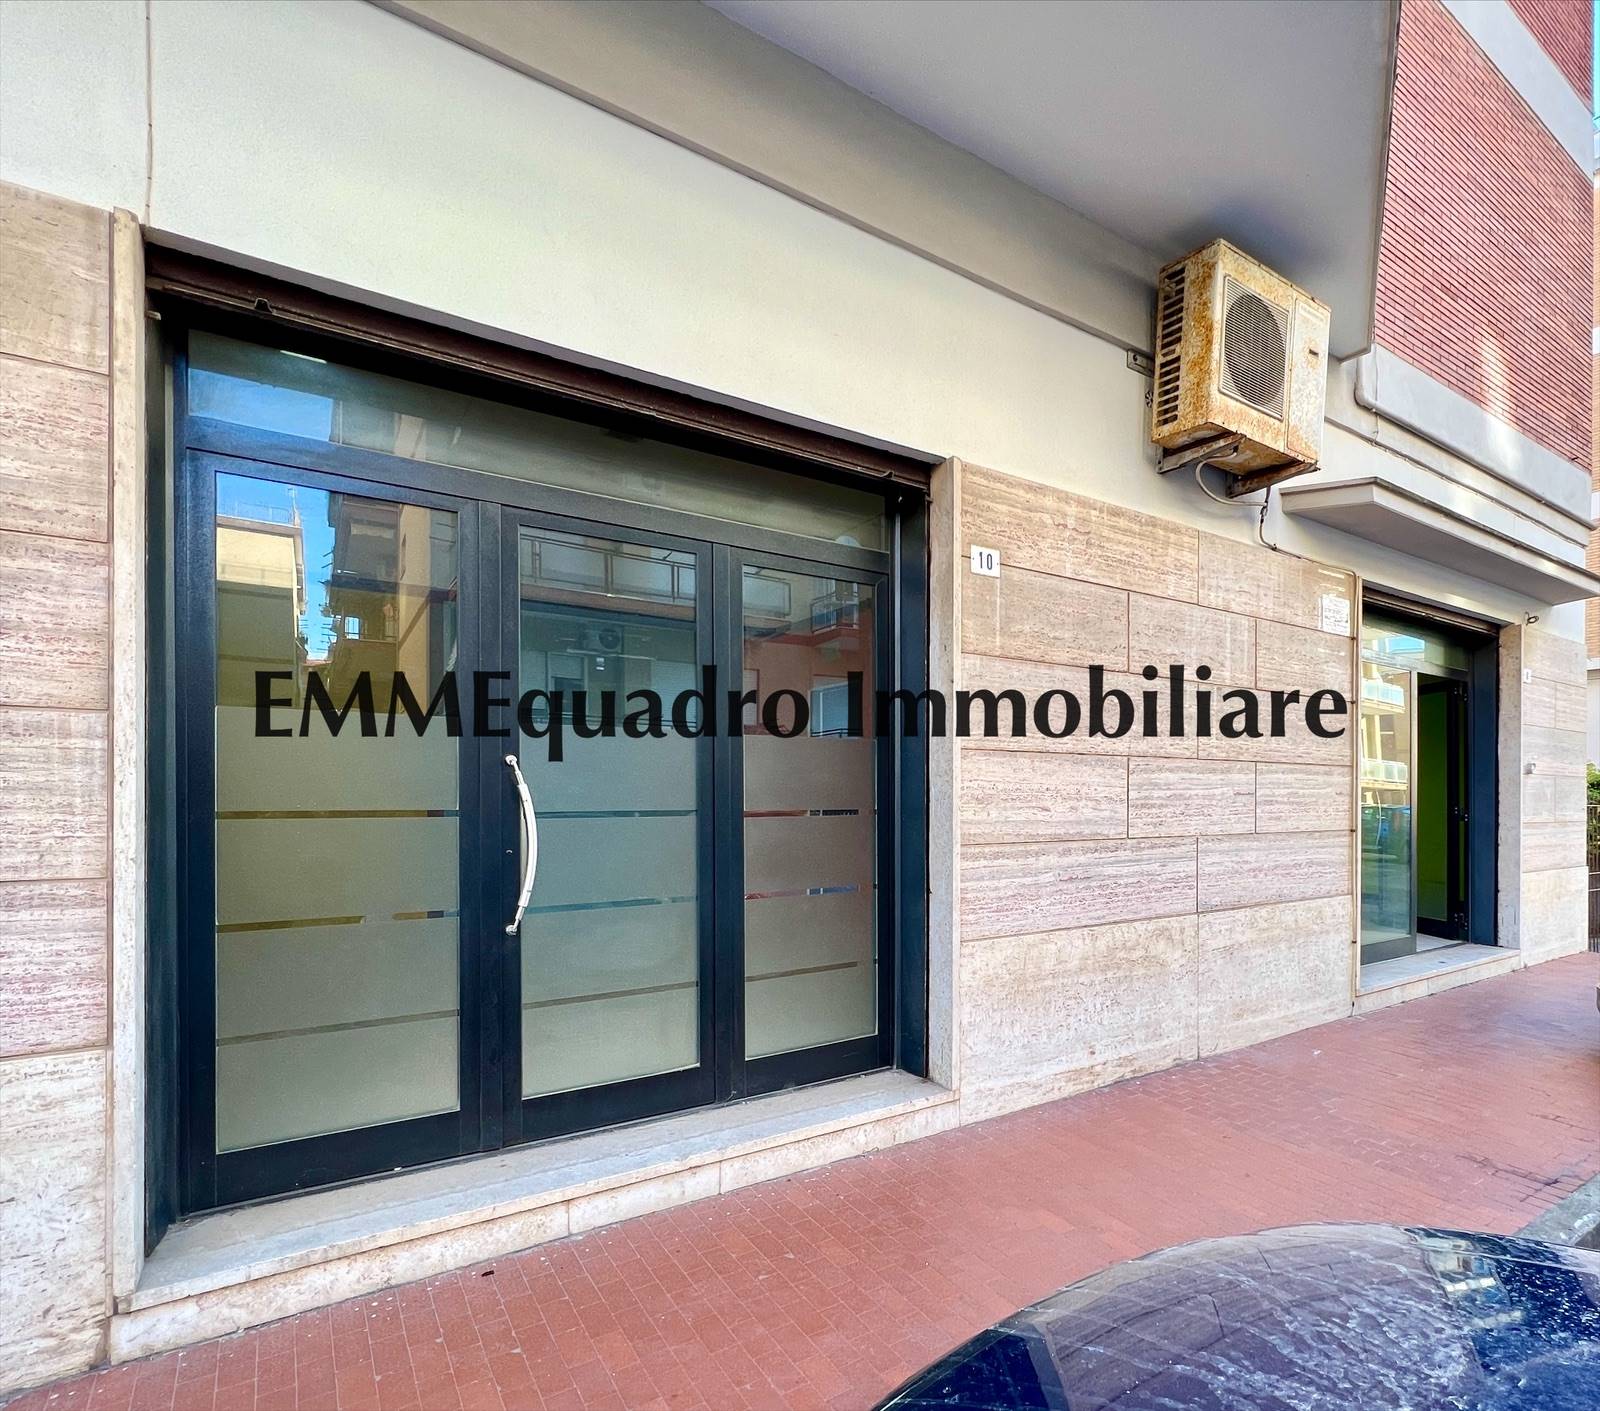 Immobile Commerciale in vendita a Terracina, 2 locali, prezzo € 157.000 | CambioCasa.it